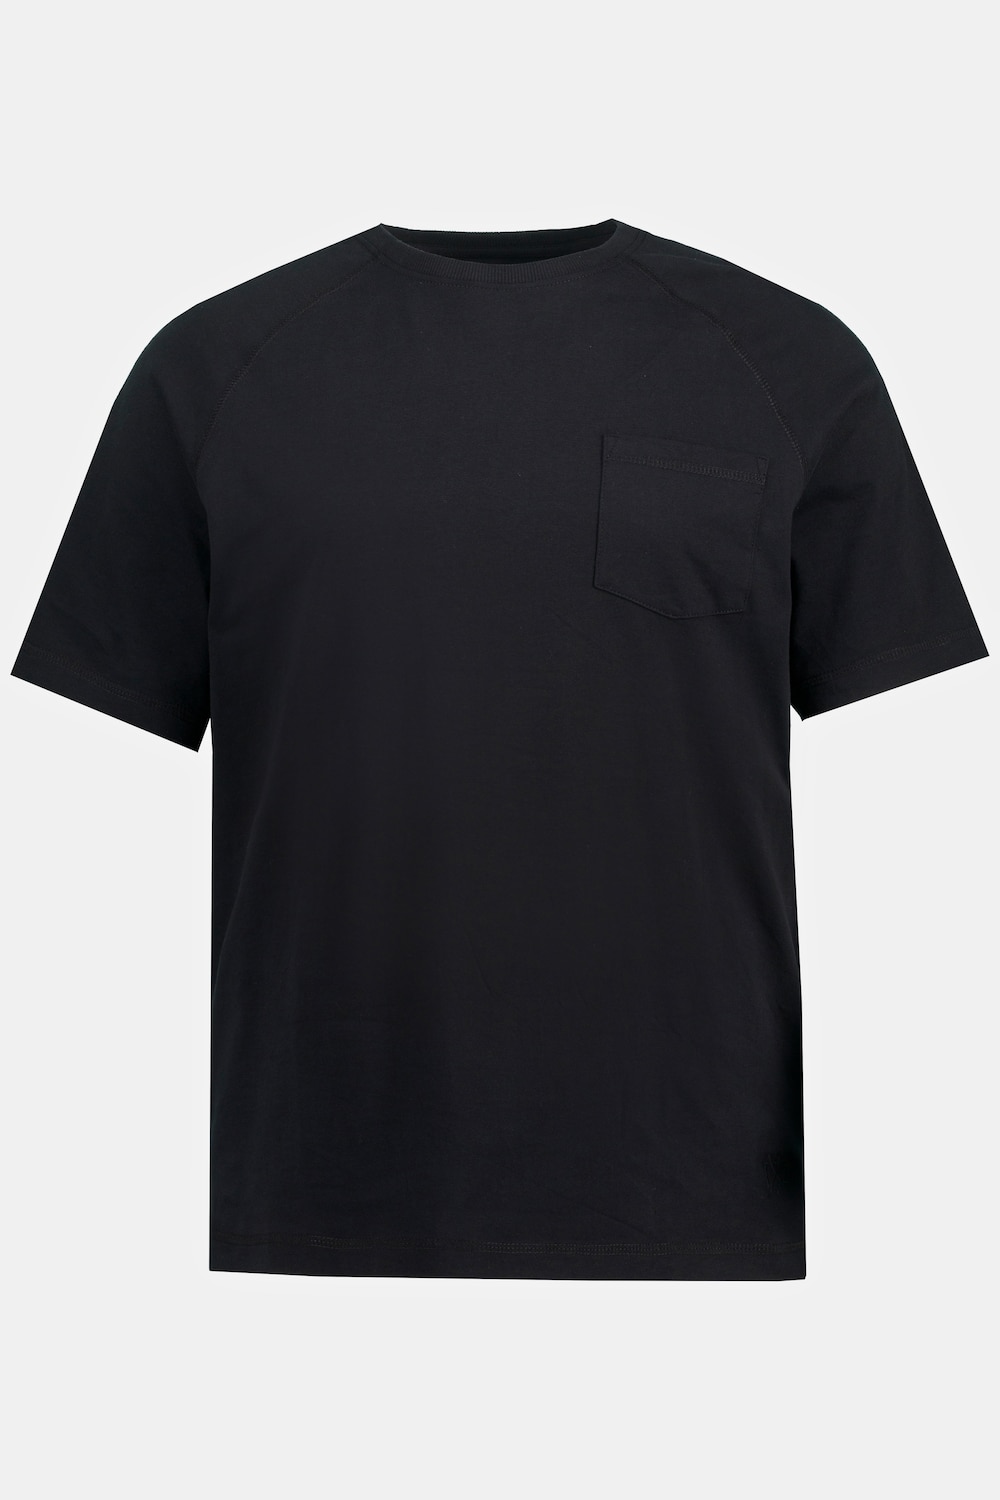 T-Shirt, Große Größen, Herren, schwarz, Größe: L, Baumwolle, JP1880 product